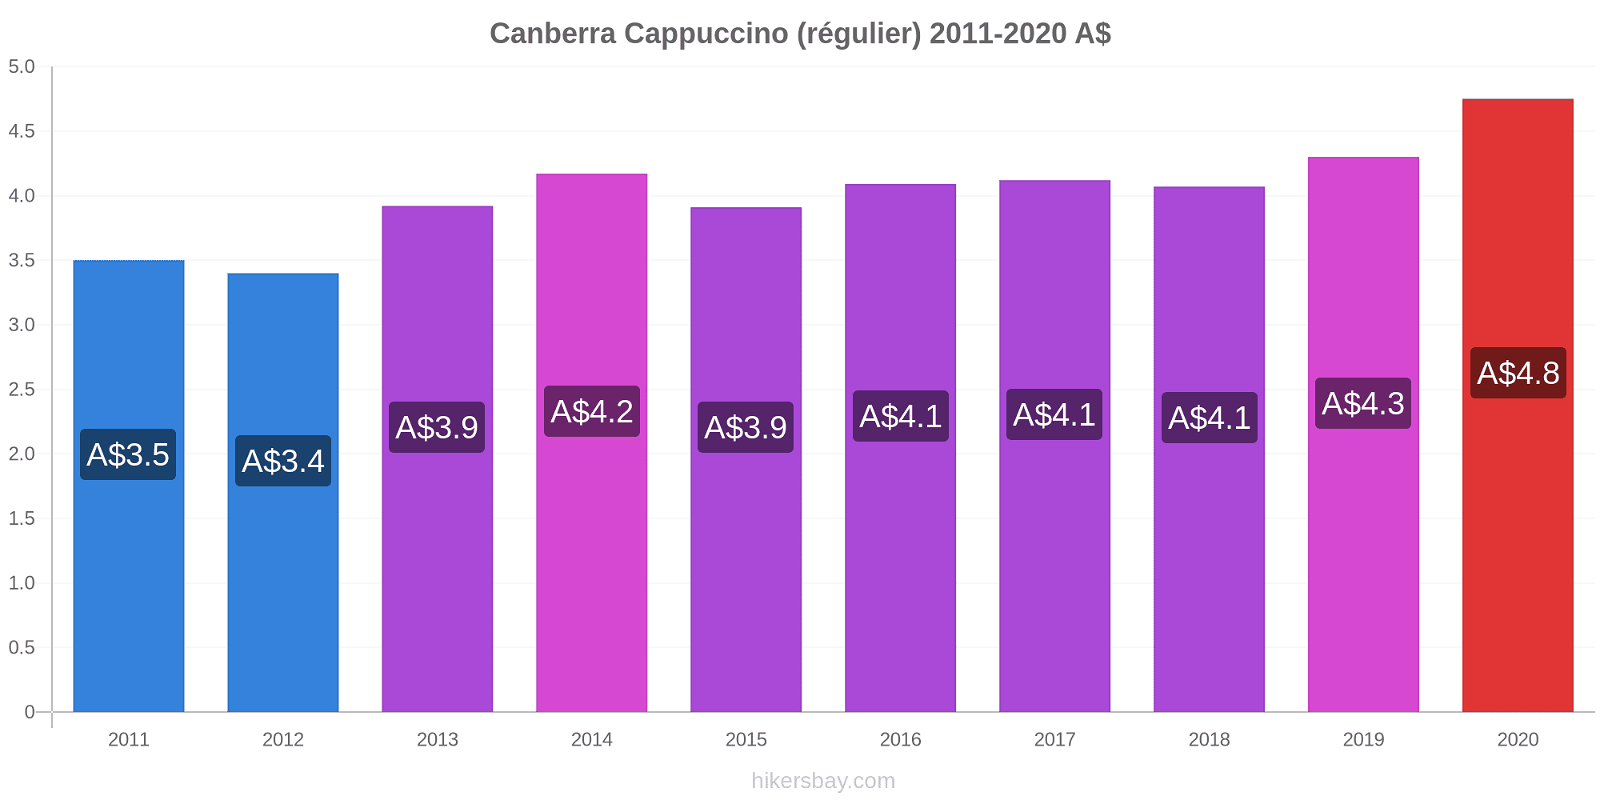 Canberra changements de prix Cappuccino (régulier) hikersbay.com